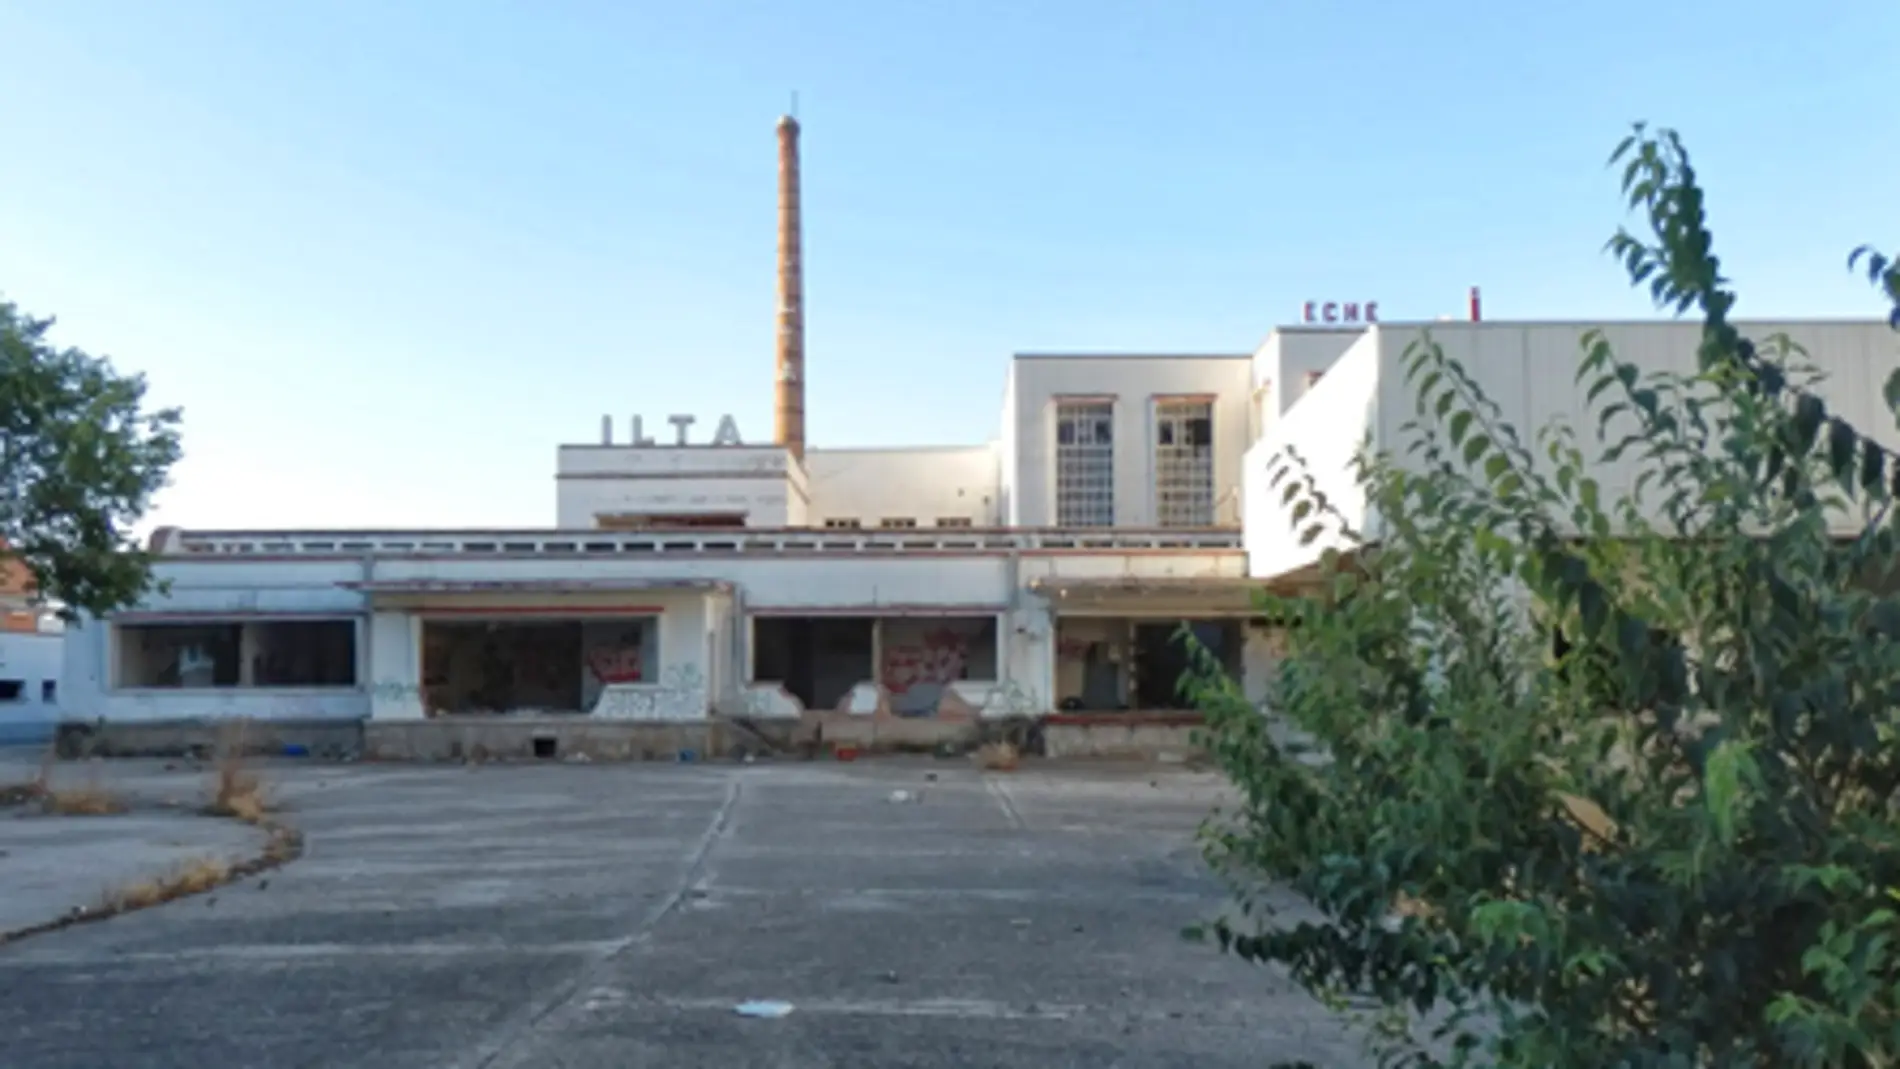 Sale adelante el PAU para reorganización la antigua fábrica de la ILTA